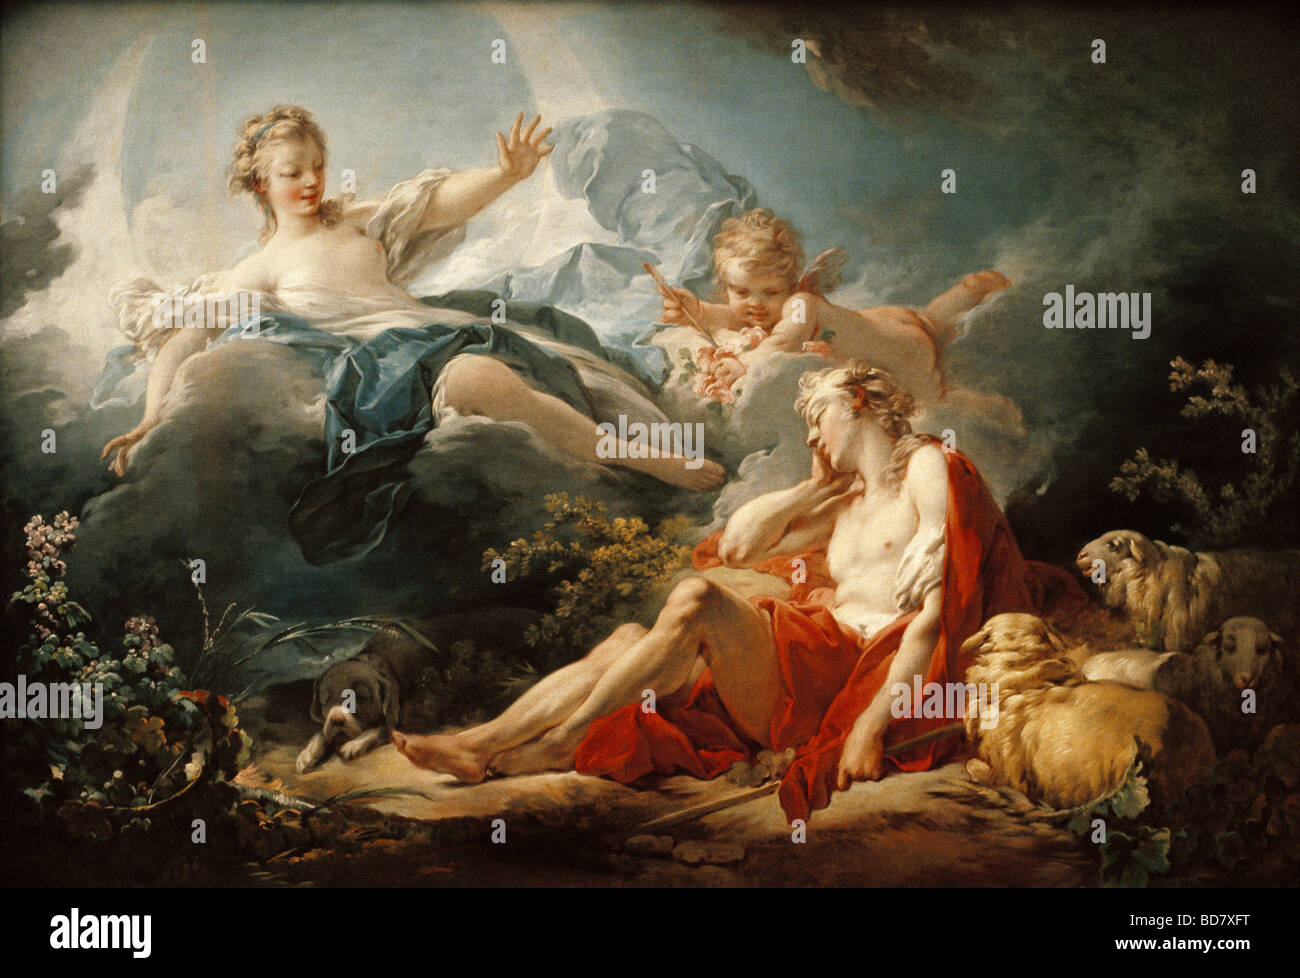 Bildende Kunst, Boucher, Francois, (1703 - 1770), Malerei, 'Diana und Endymion", Frankreich, 18. Jahrhundert, Artist's Urheberrecht nicht gelöscht werden Stockfoto